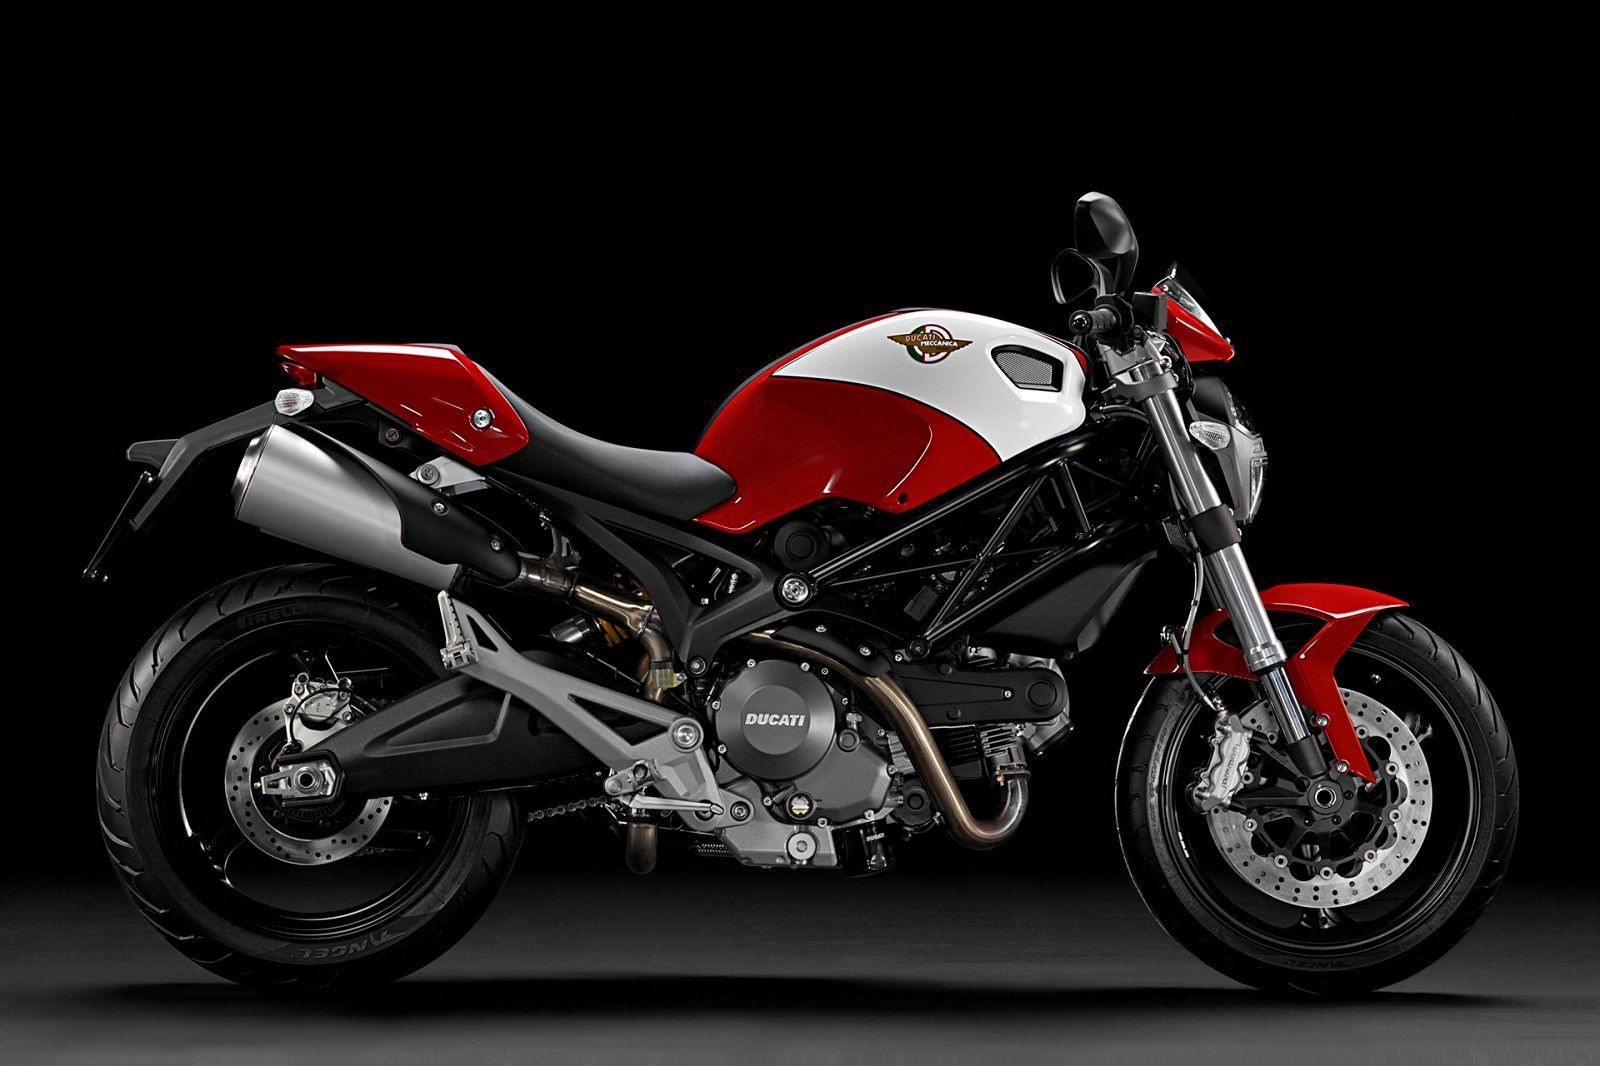 2012 Ducati Monster 696